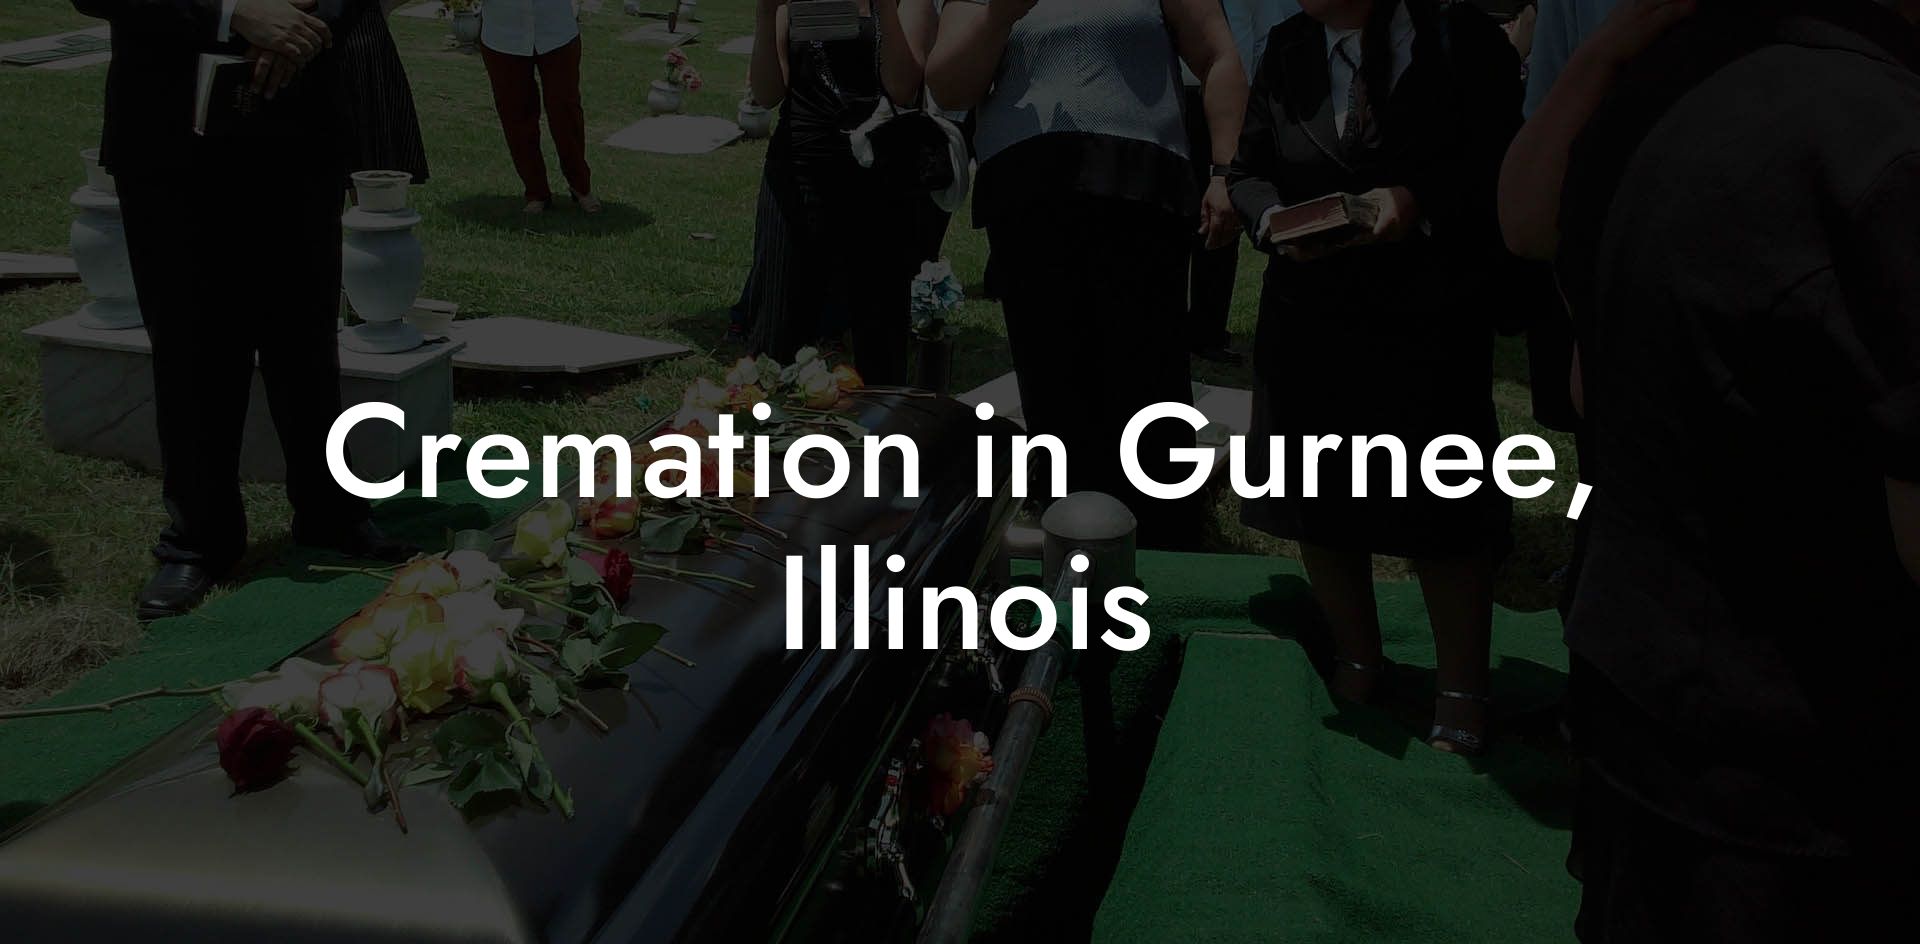 Cremation in Gurnee, Illinois